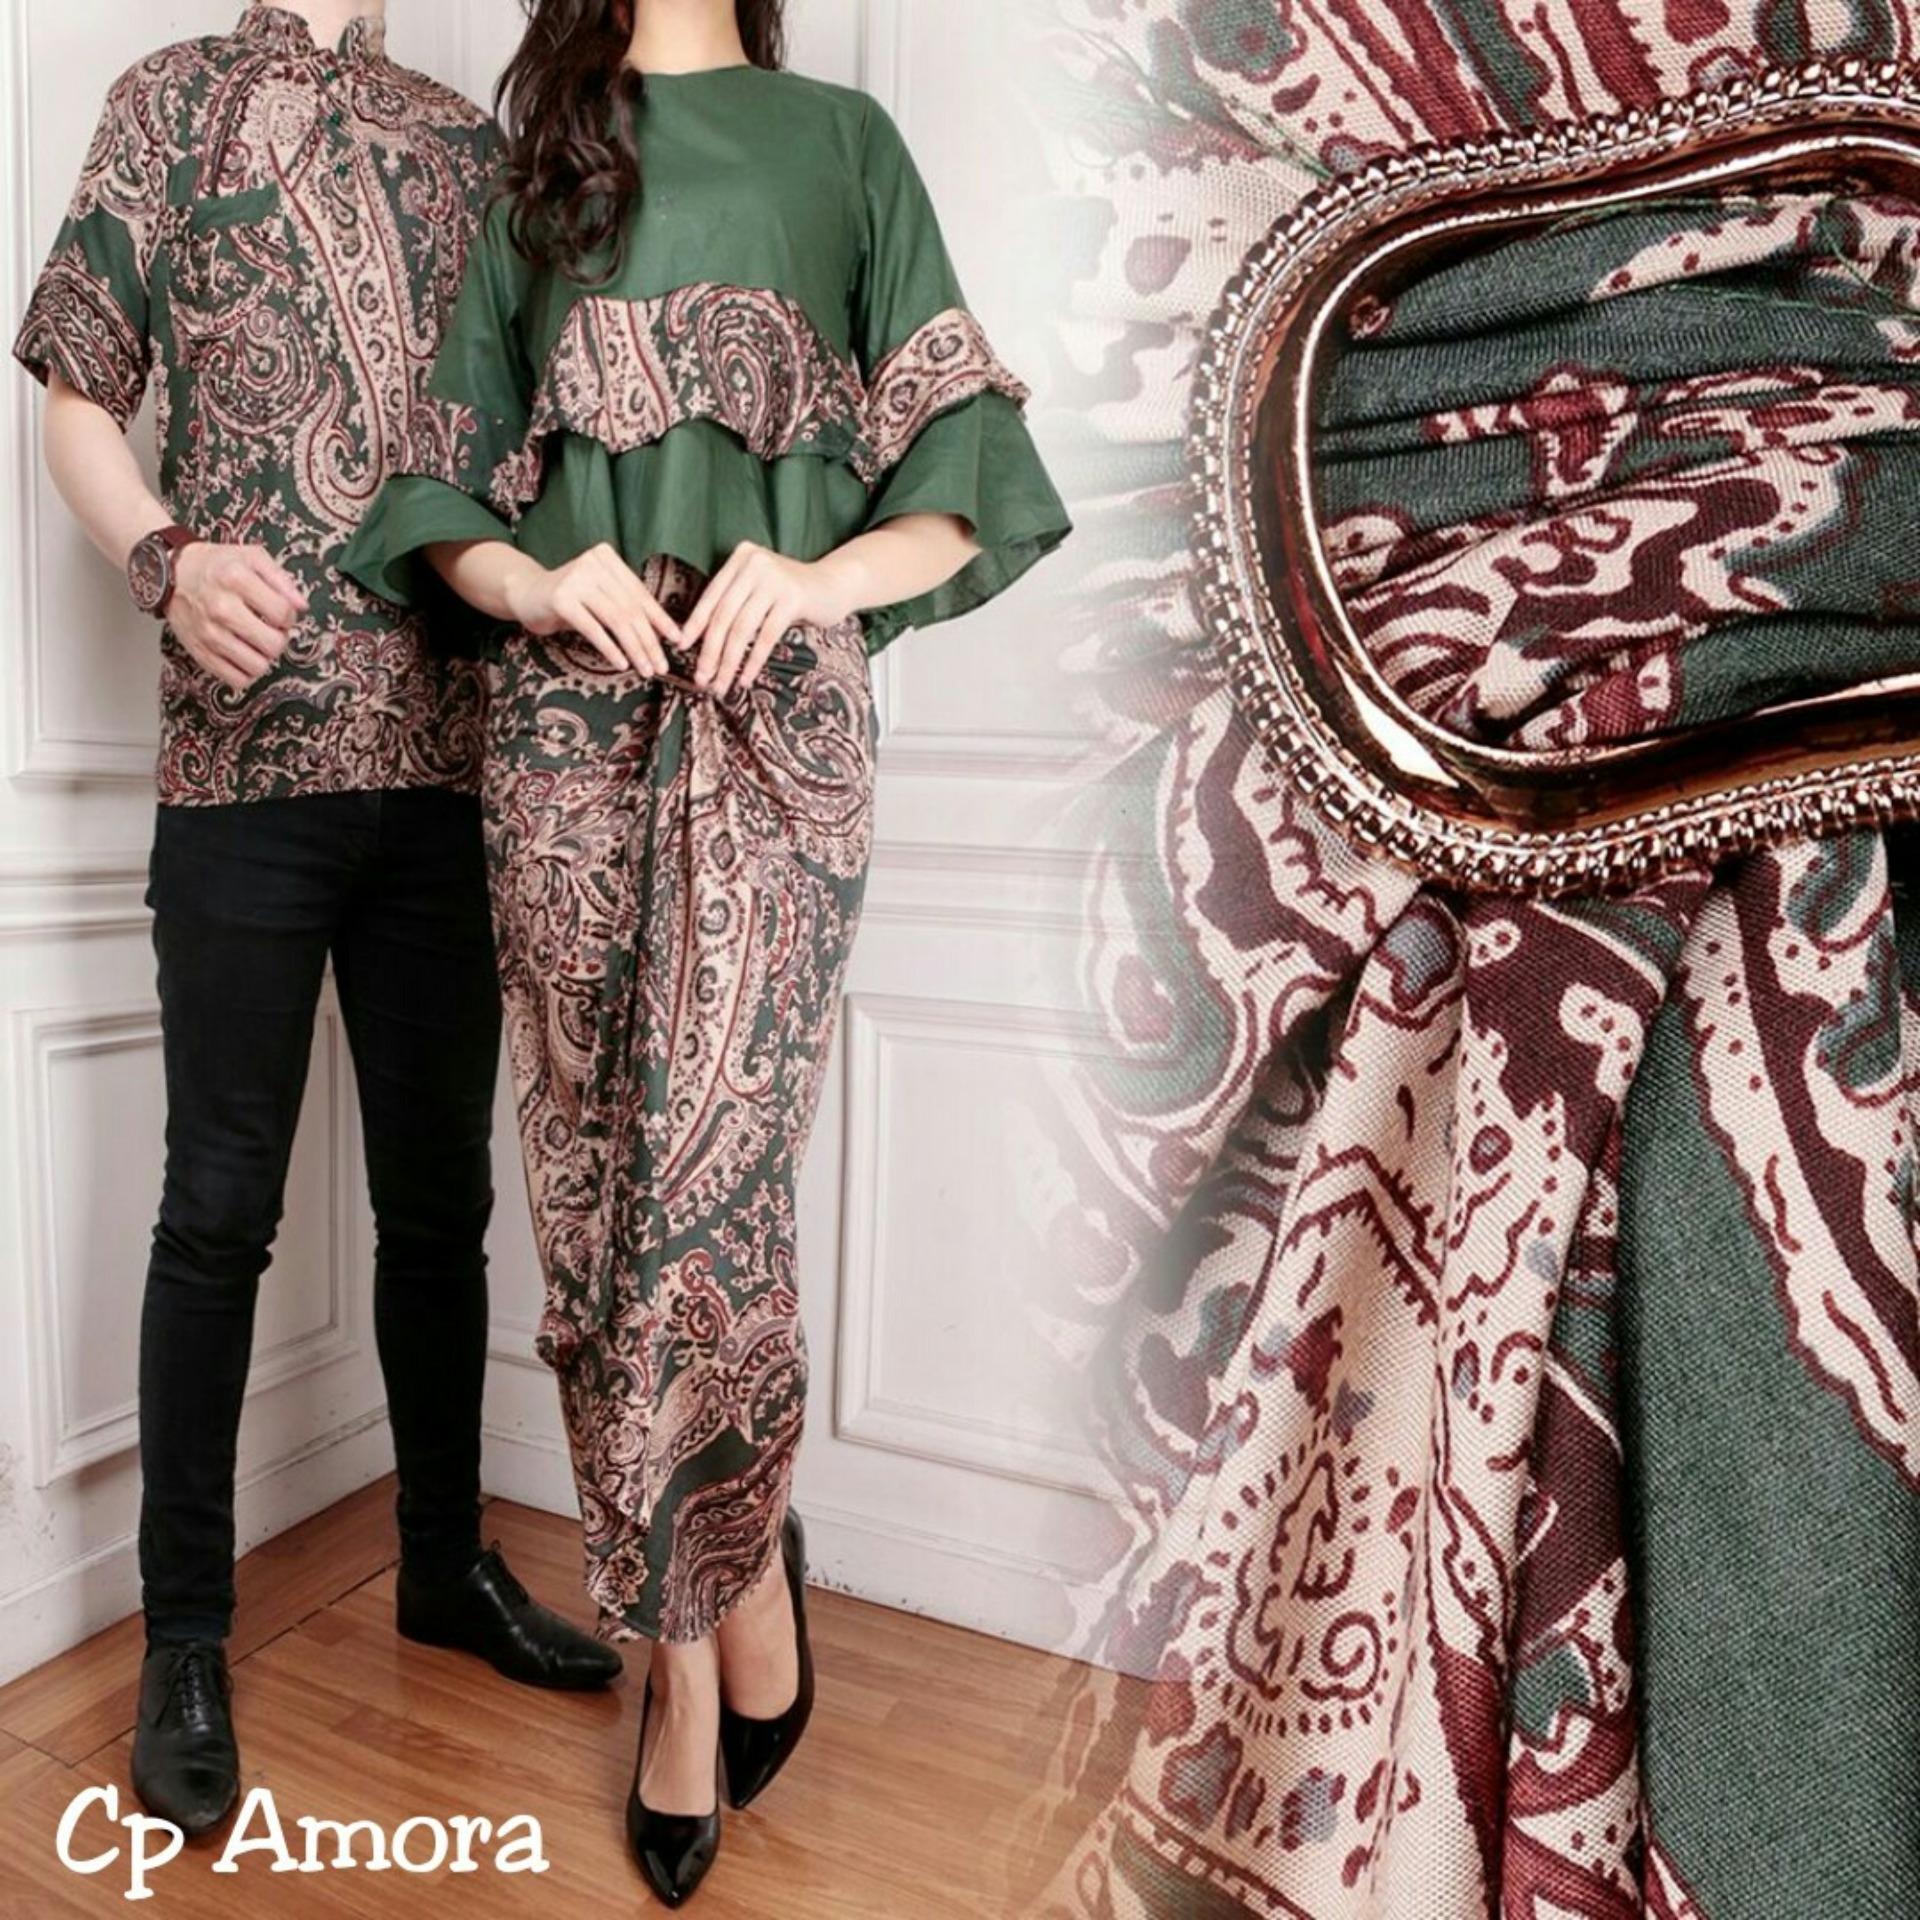 Kemeja Batik  Blouse Batik  Couple  Batik  Couple  Kemeja Batik  